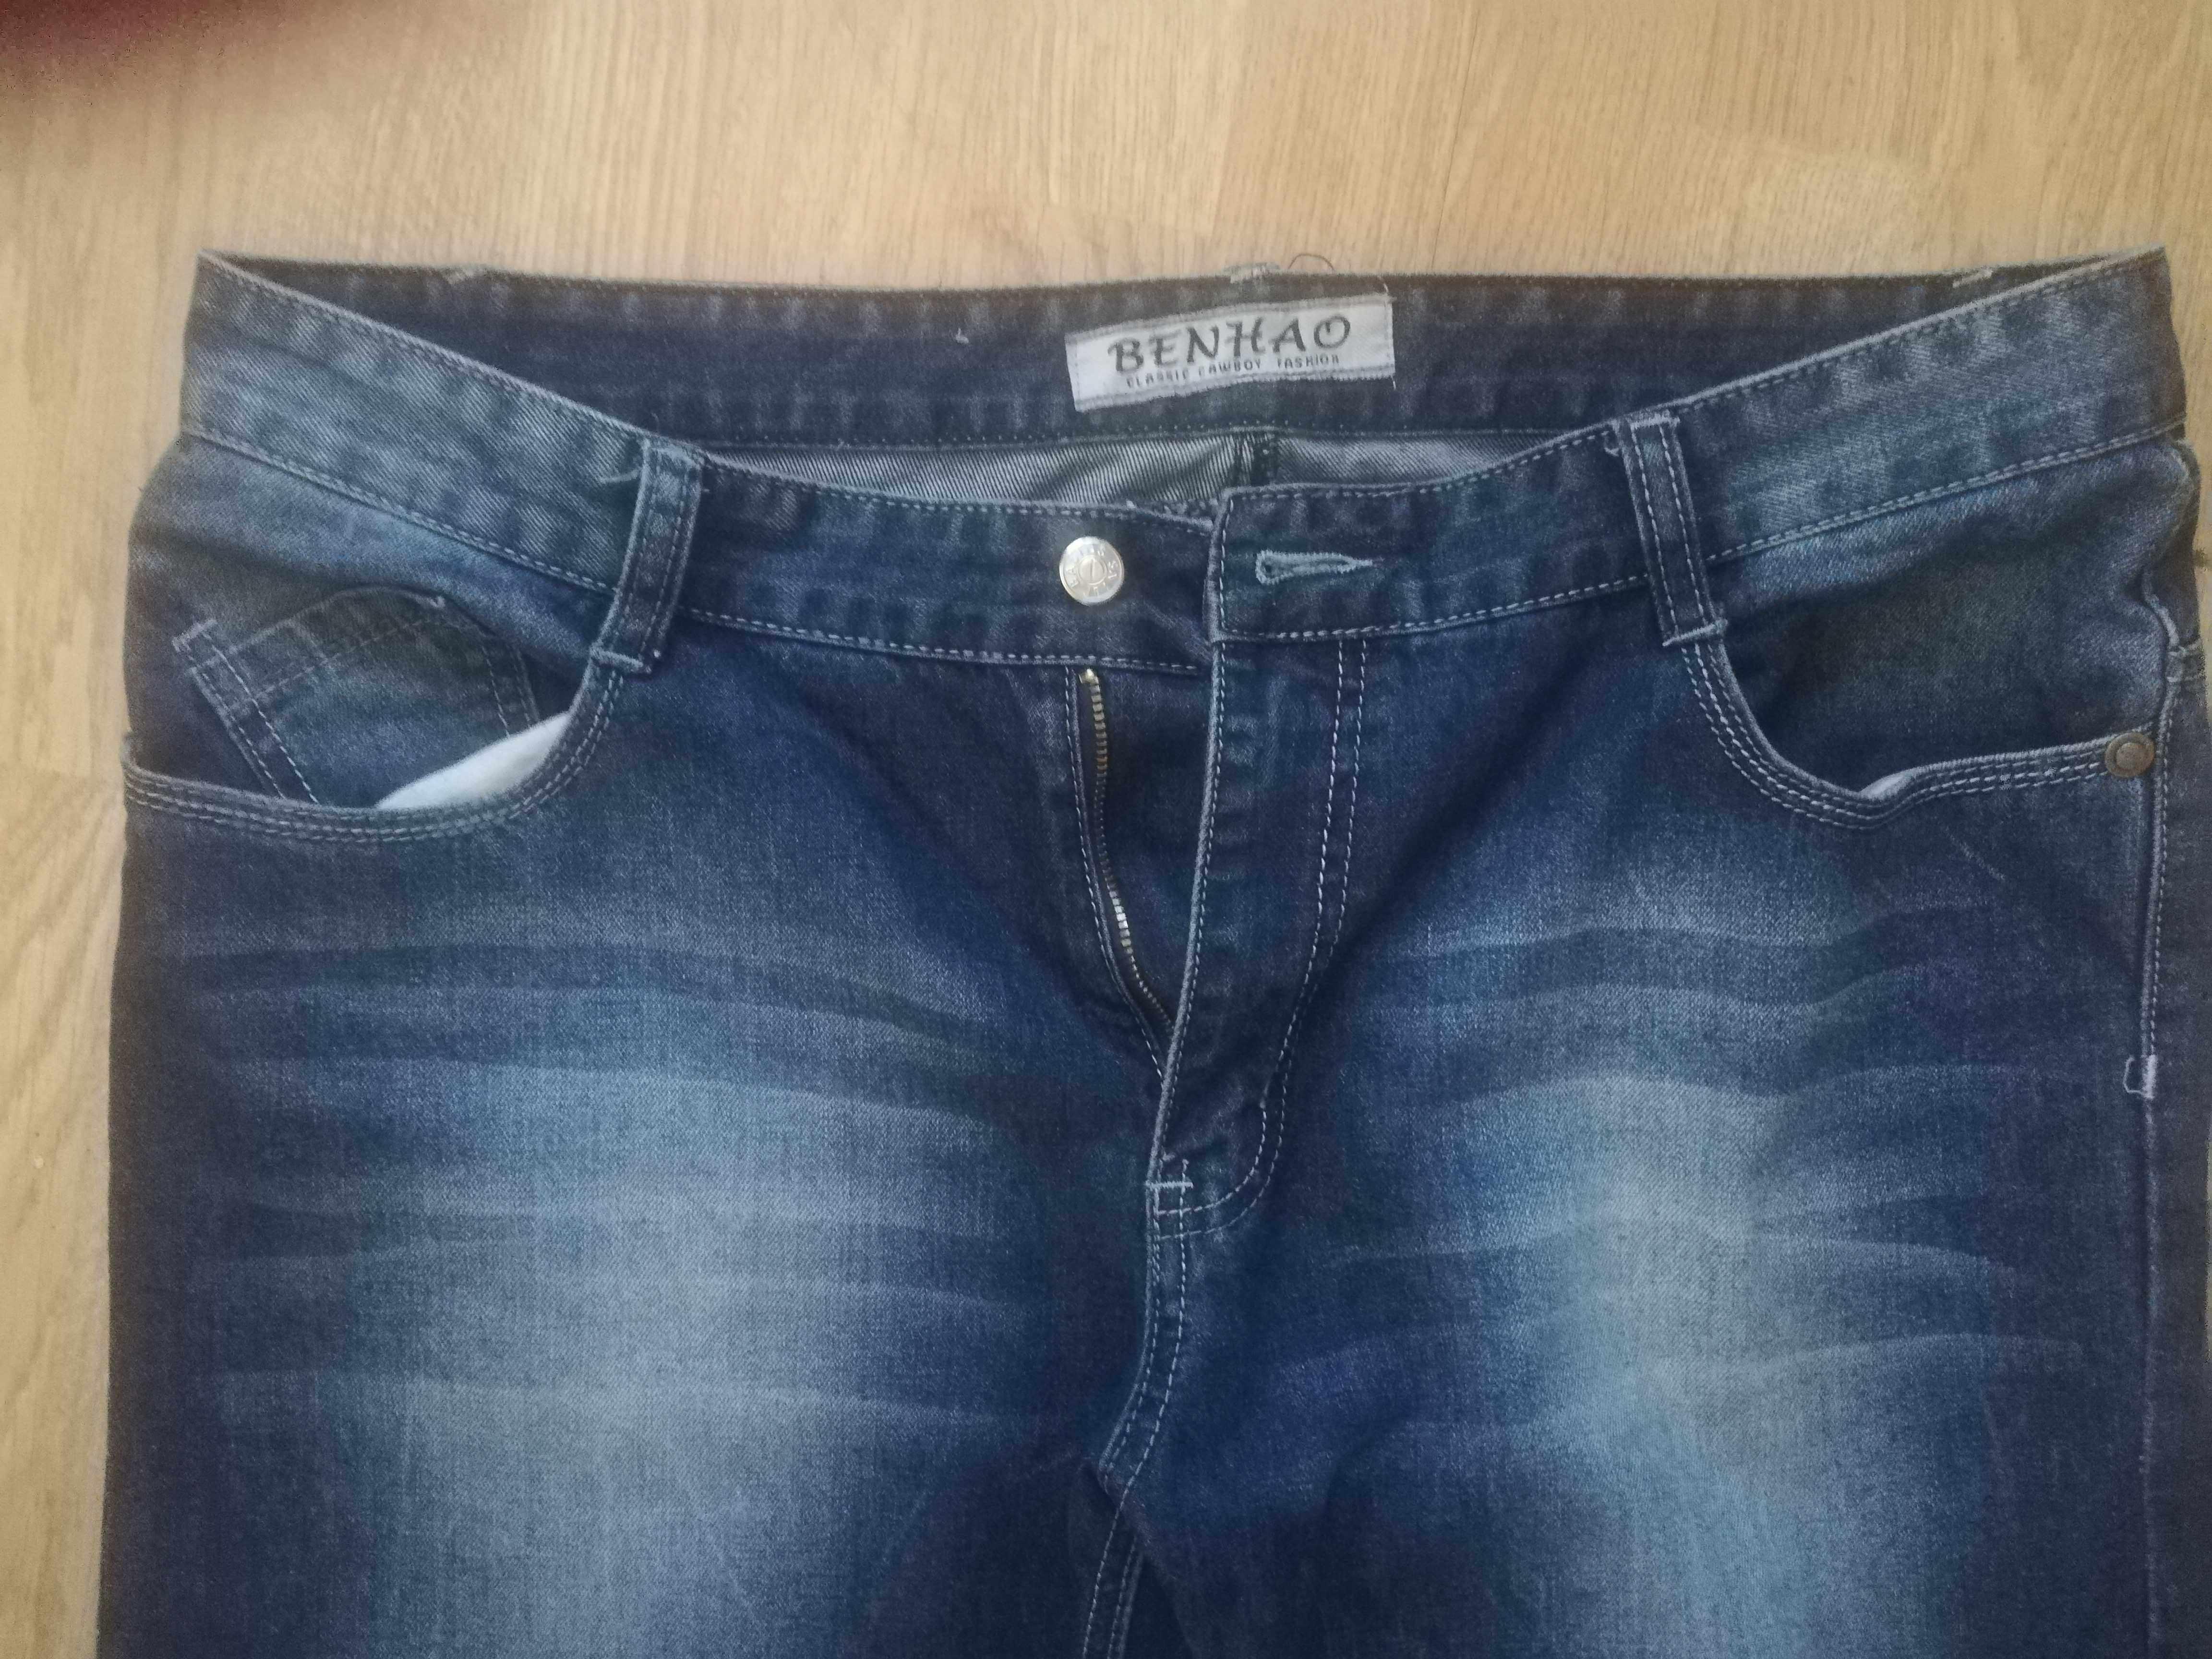 Spodnie jeans xxxl męskie.